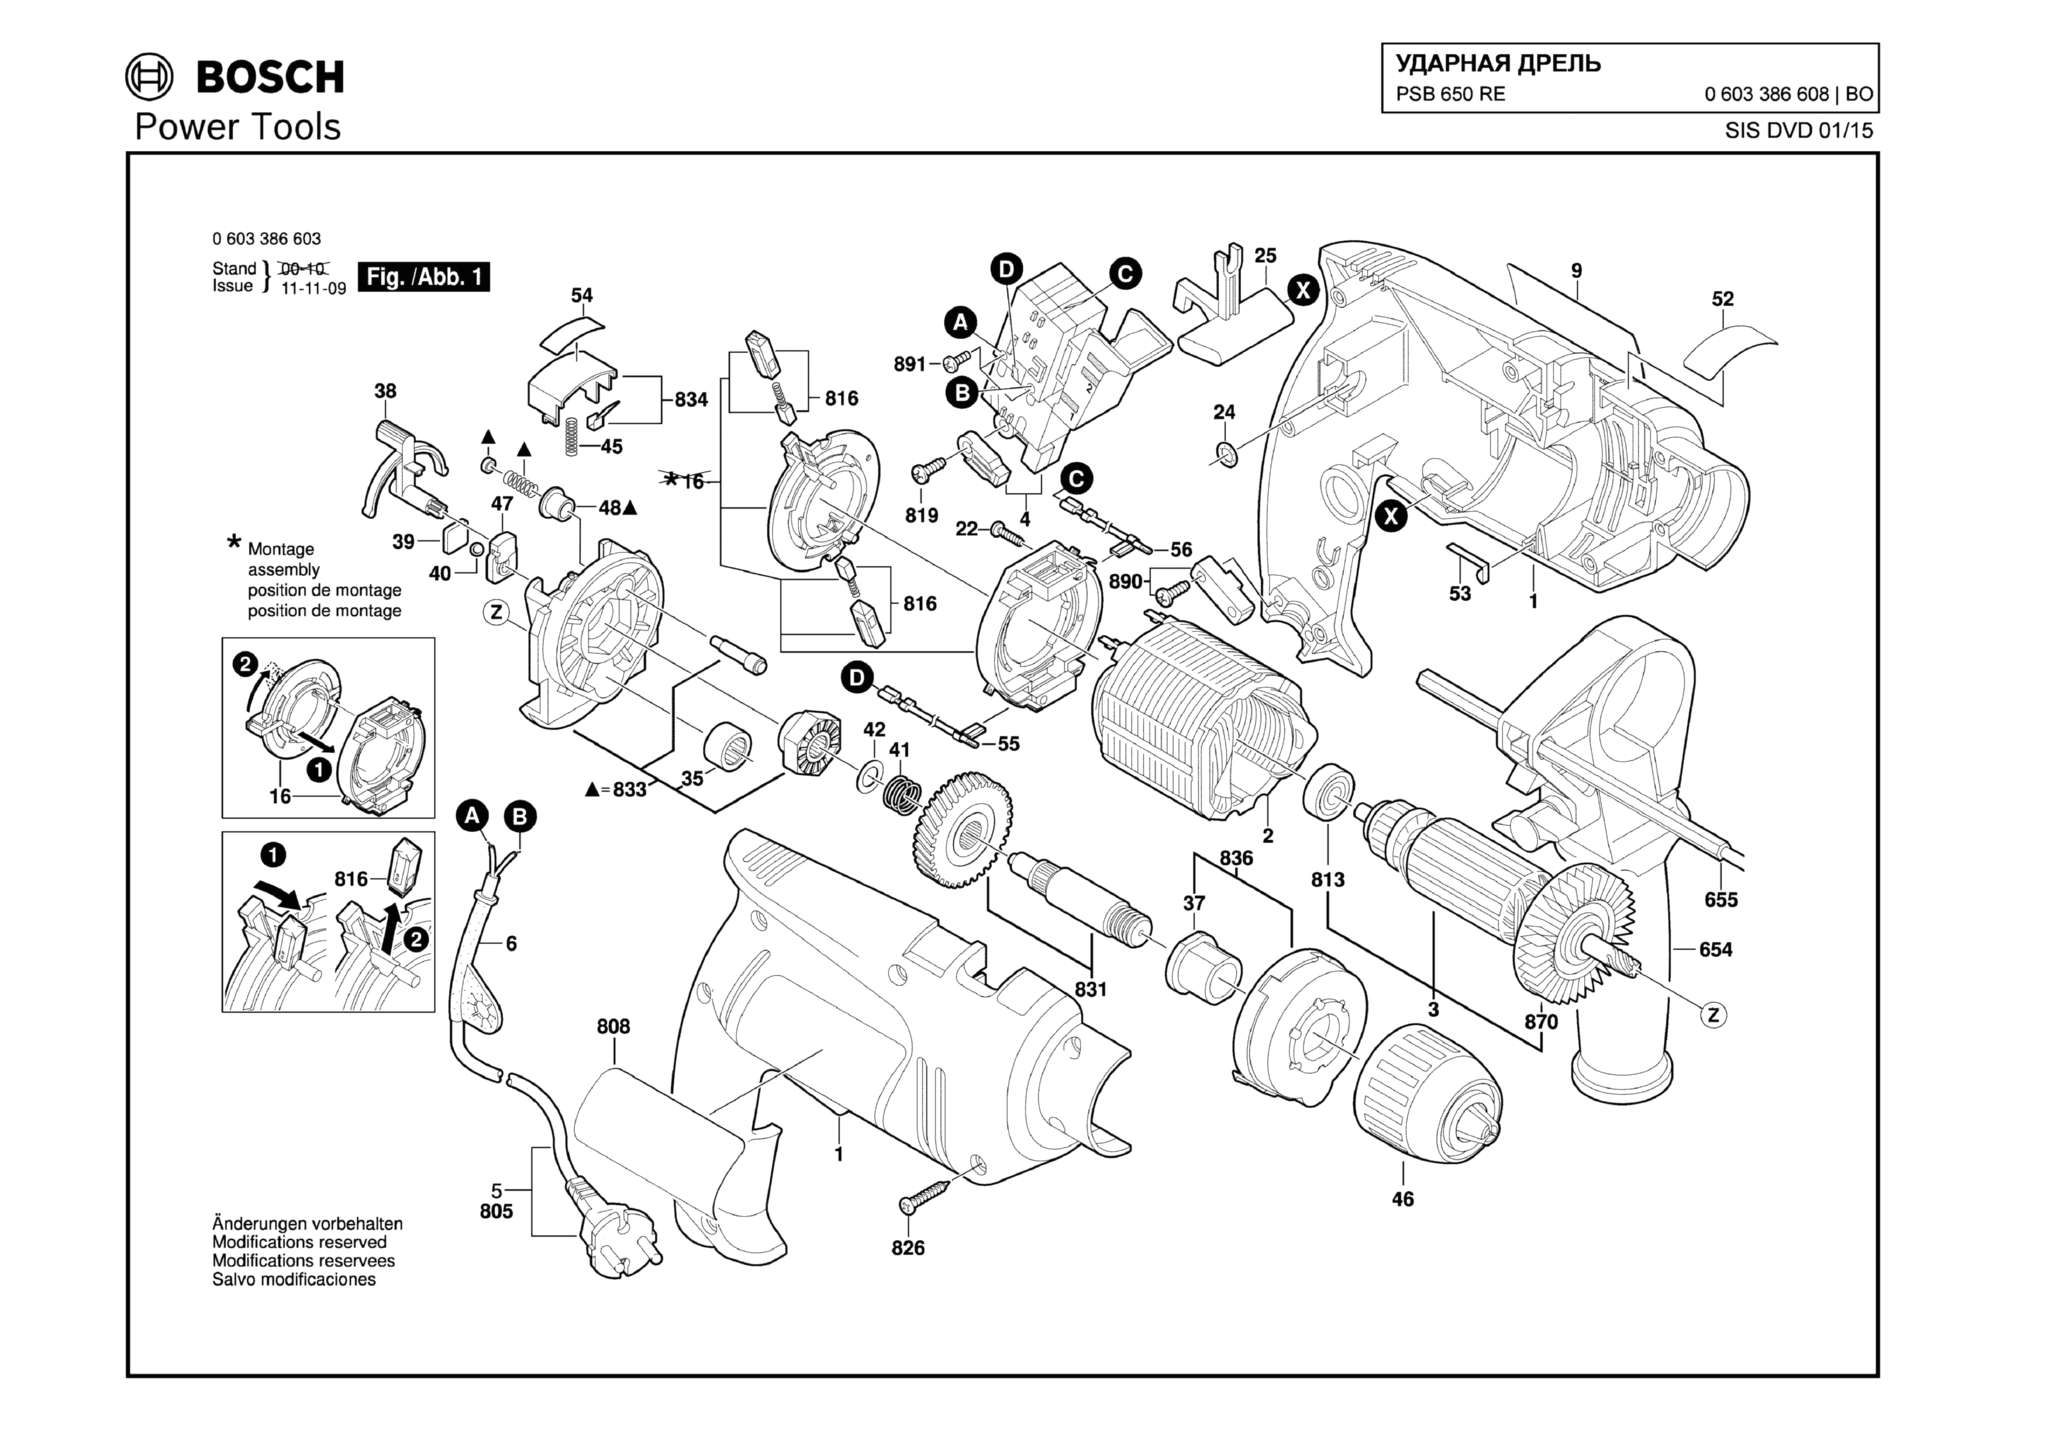 Запчасти, схема и деталировка Bosch PSB 650 RE (ТИП 0603386608)